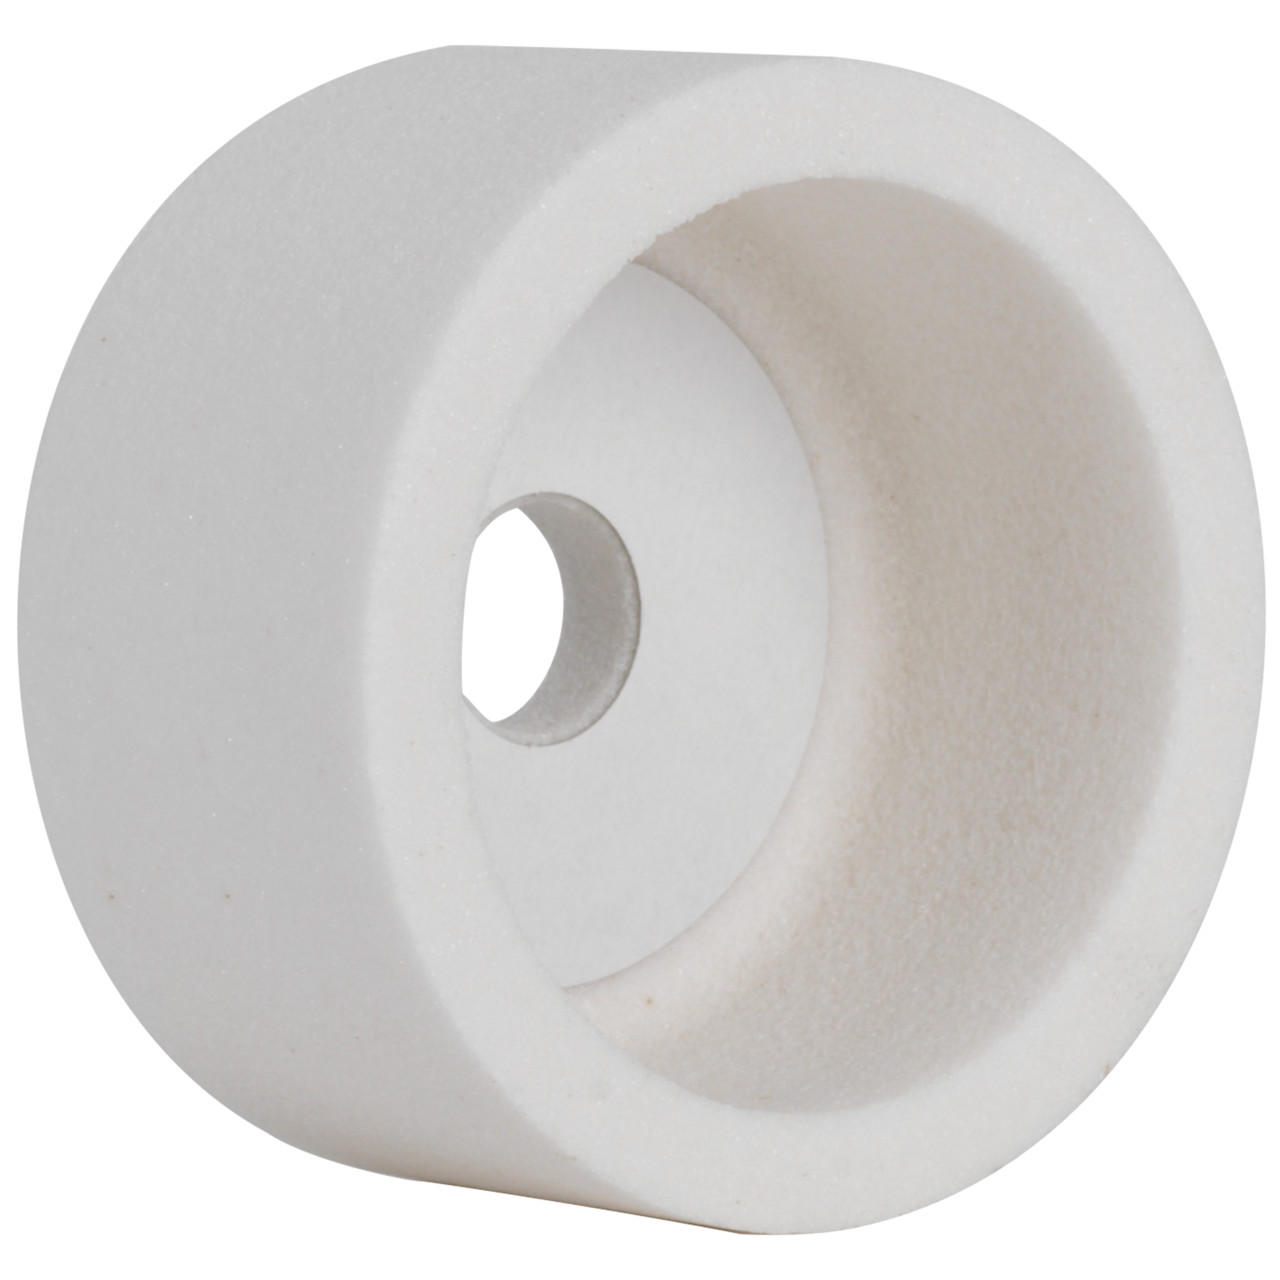 Tyrolit ceramica convenzionale per la rettifica a secco DxDxH 100x50x20 Per acciai non legati e basso legati, acciai alto legati e HSS, forma: 6, Art. 54820